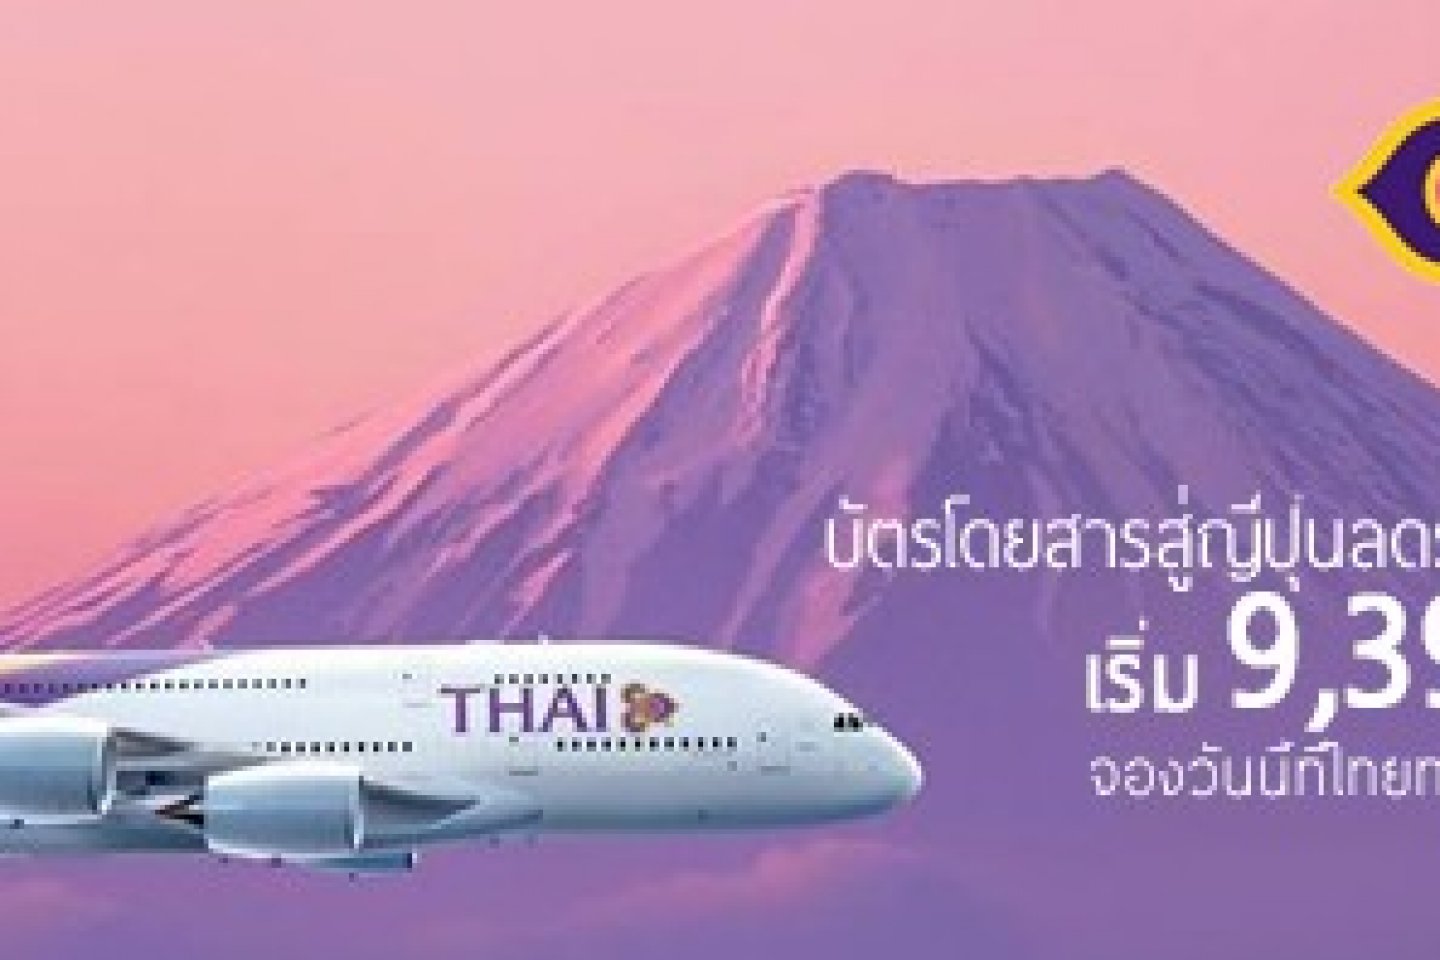 บินเป็นคู่สู่ญี่ปุ่นกับการบินไทย ในราคาสุดคุ้ม
โปรโมชั่นใหม่ สุดฮ็อต!! ที่พลาดไม่ได้